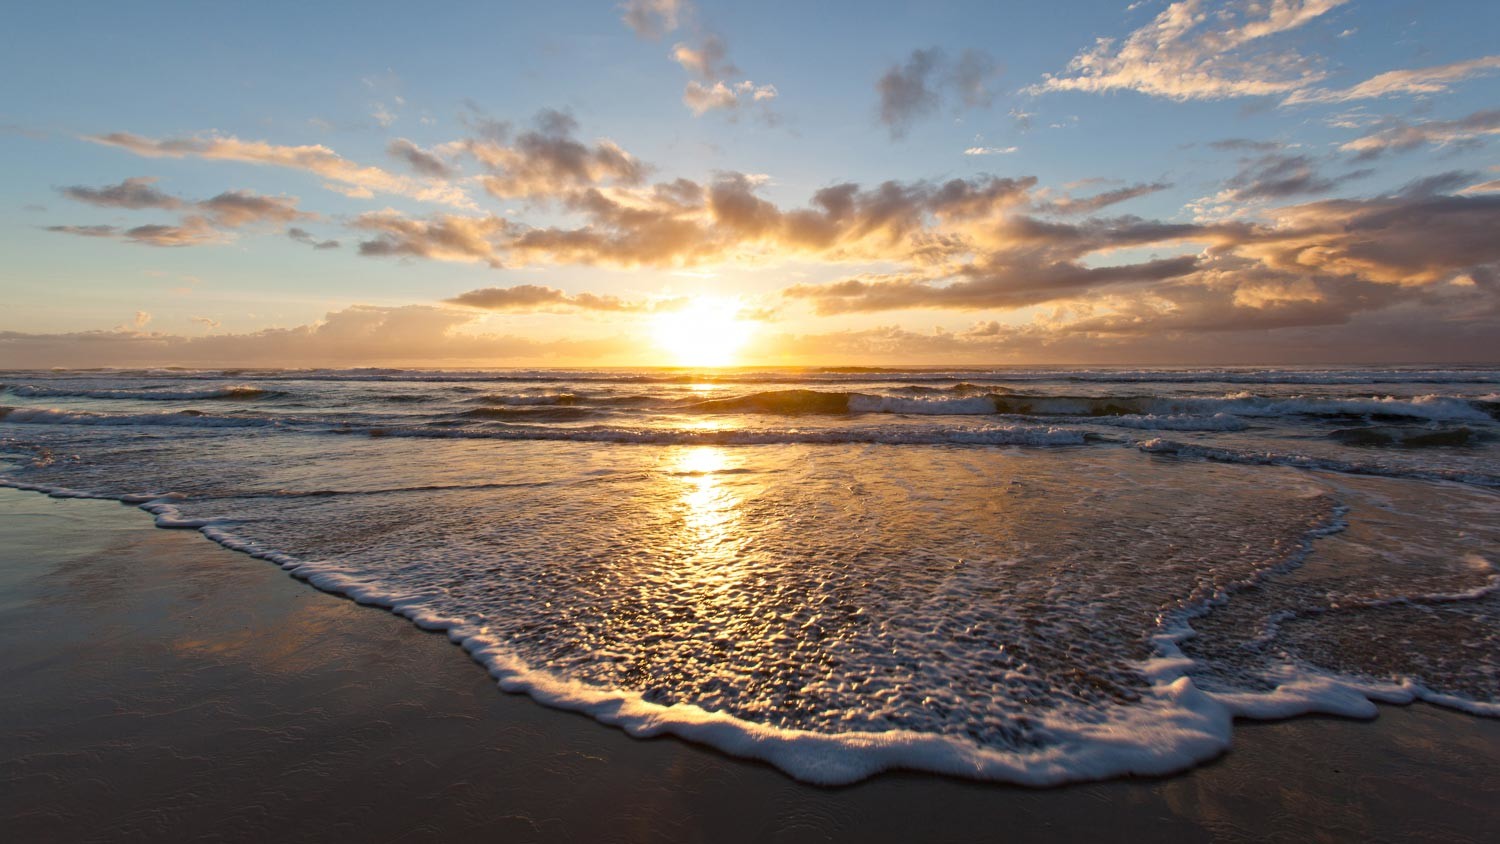 Sunrise photo of a beach in Australia